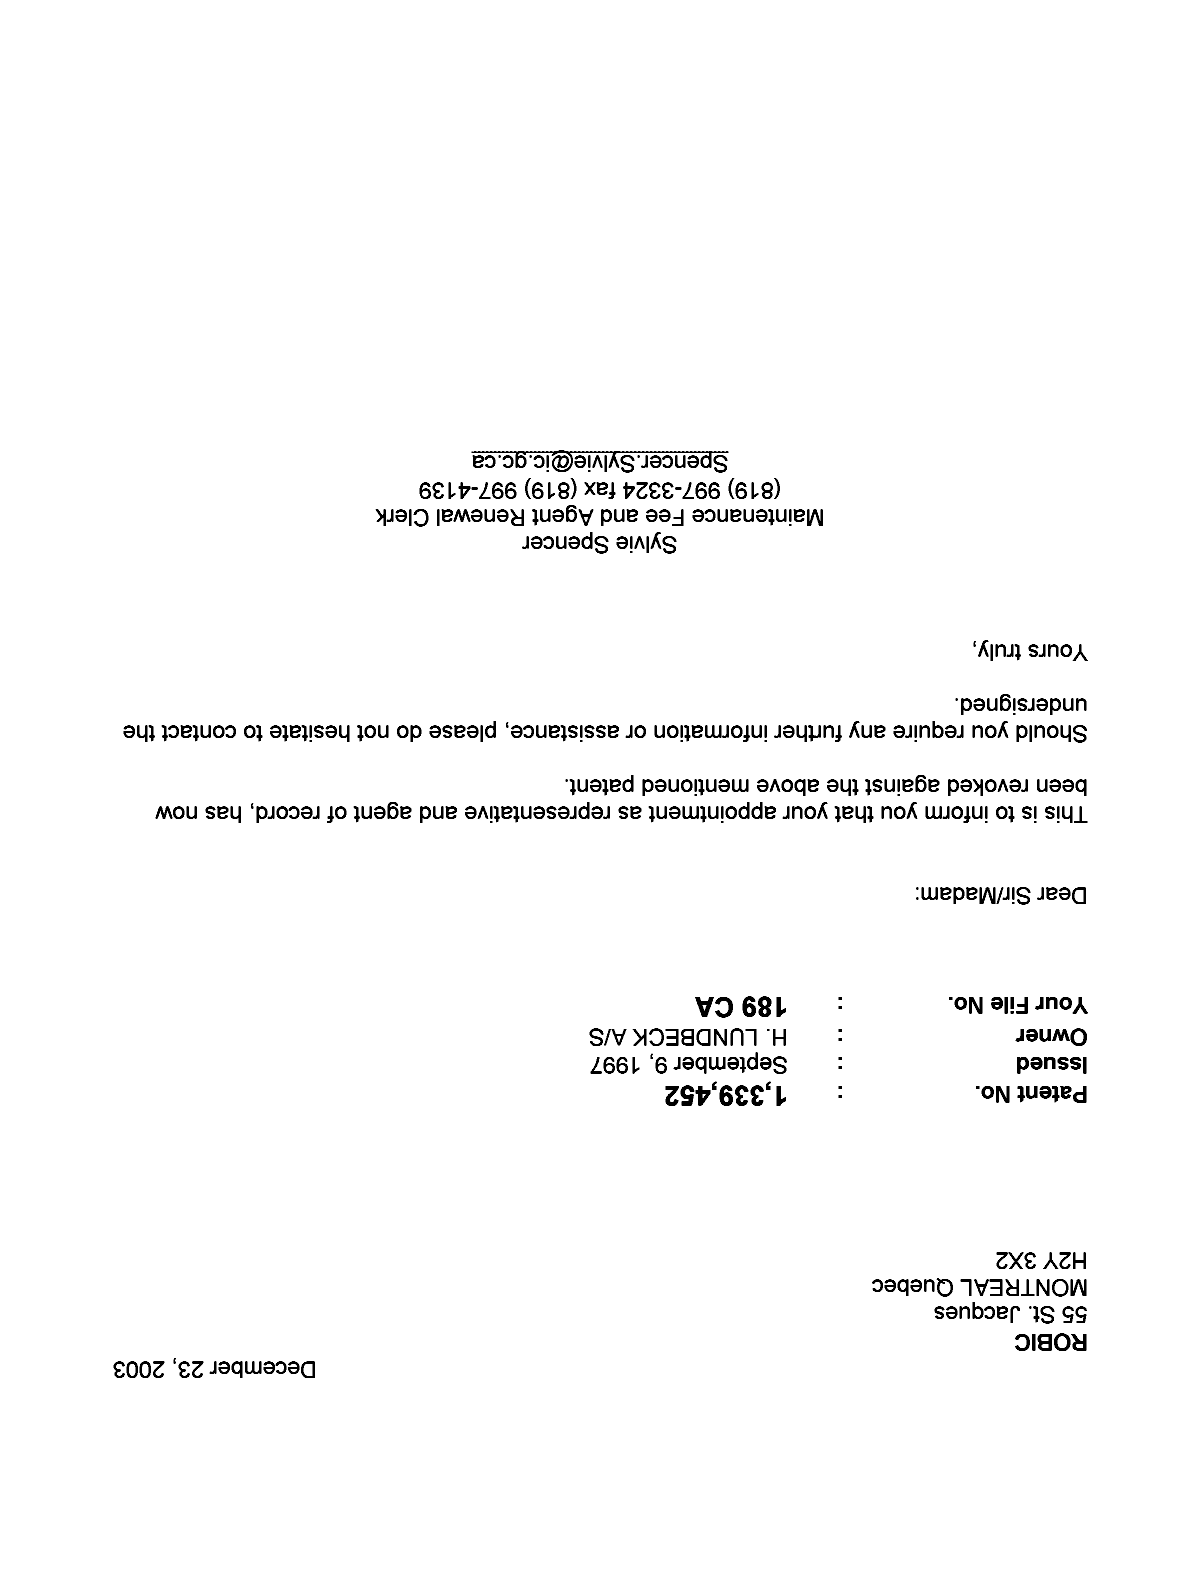 Document de brevet canadien 1339452. Correspondance 20021223. Image 1 de 1